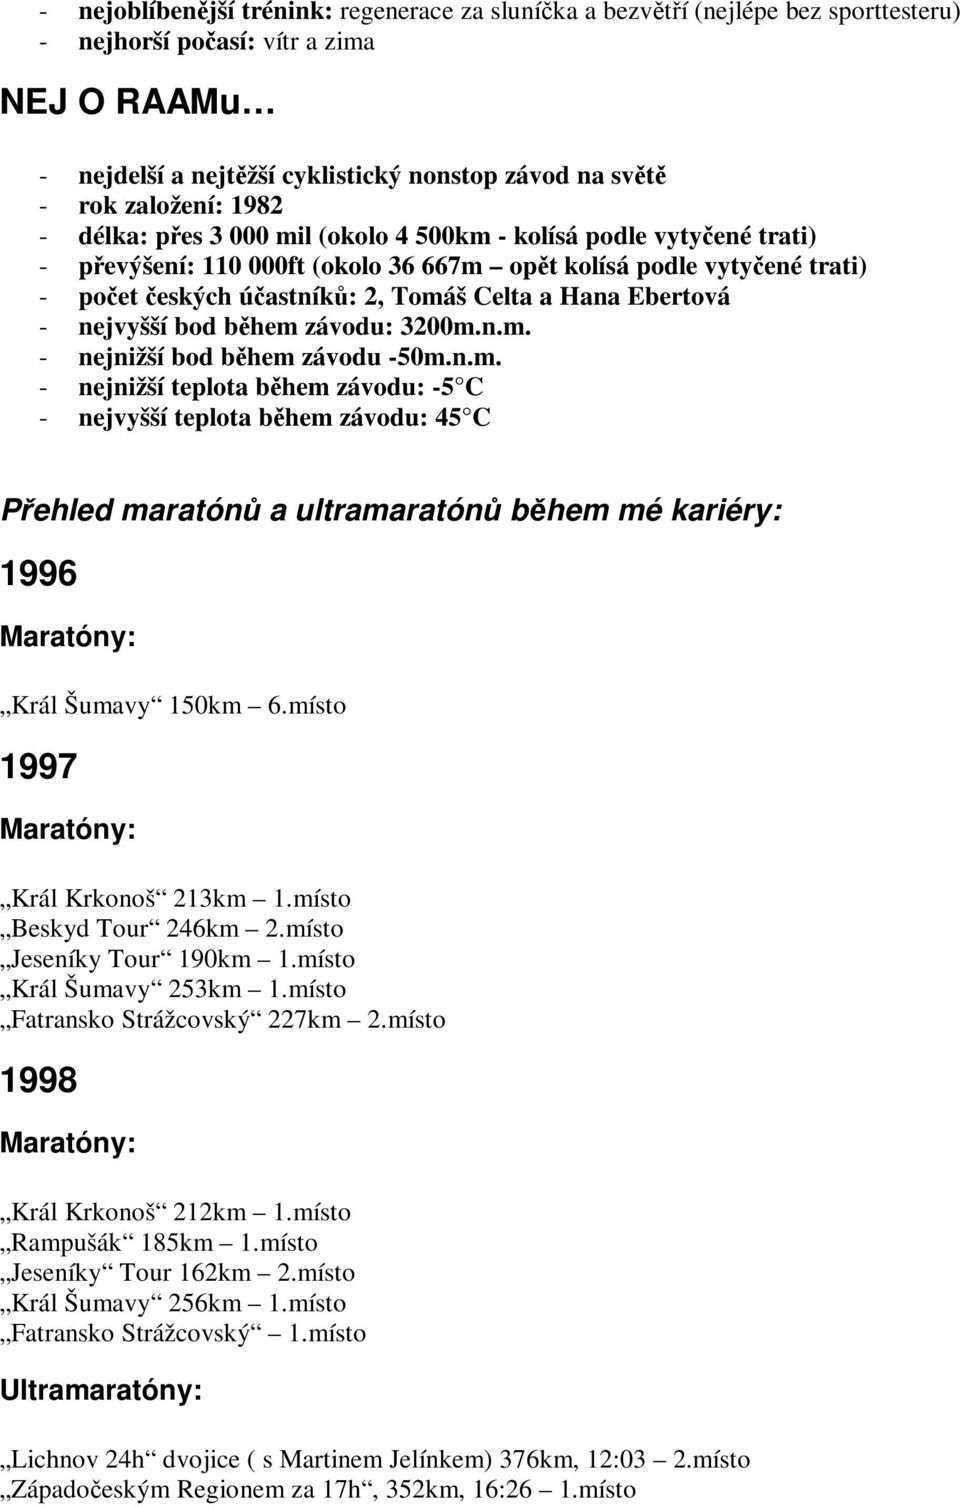 nejvyšší bod bhem závodu: 3200m.n.m. - nejnižší bod bhem závodu -50m.n.m. - nejnižší teplota bhem závodu: -5 C - nejvyšší teplota bhem závodu: 45 C Pehled maratón a ultramaratón bhem mé kariéry: 1996 Král Šumavy 150km 6.